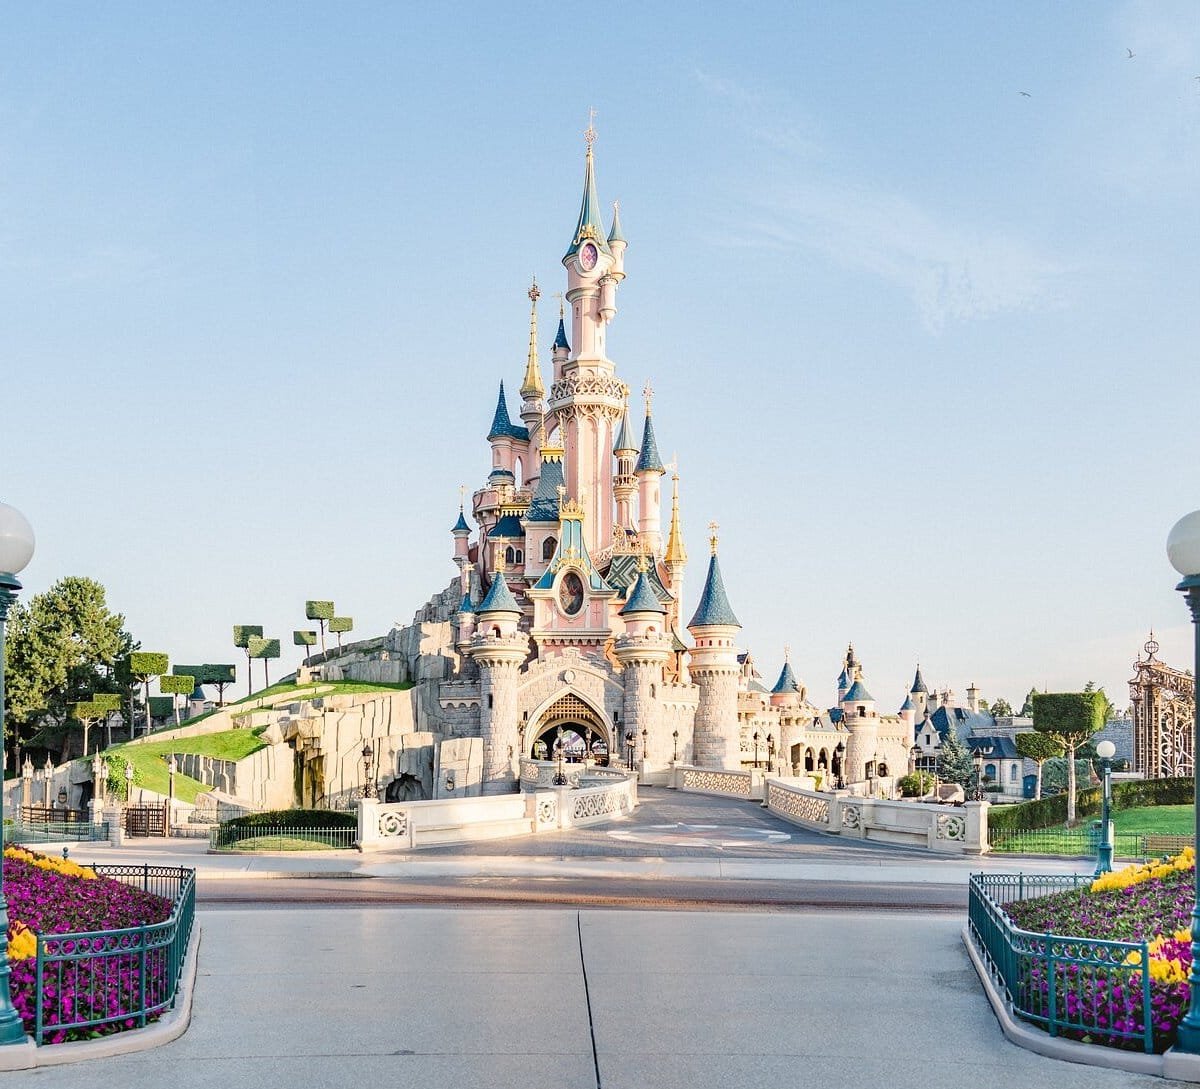 Day 3: Enjoy Your Fun Filled Day At Disneyland® Paris